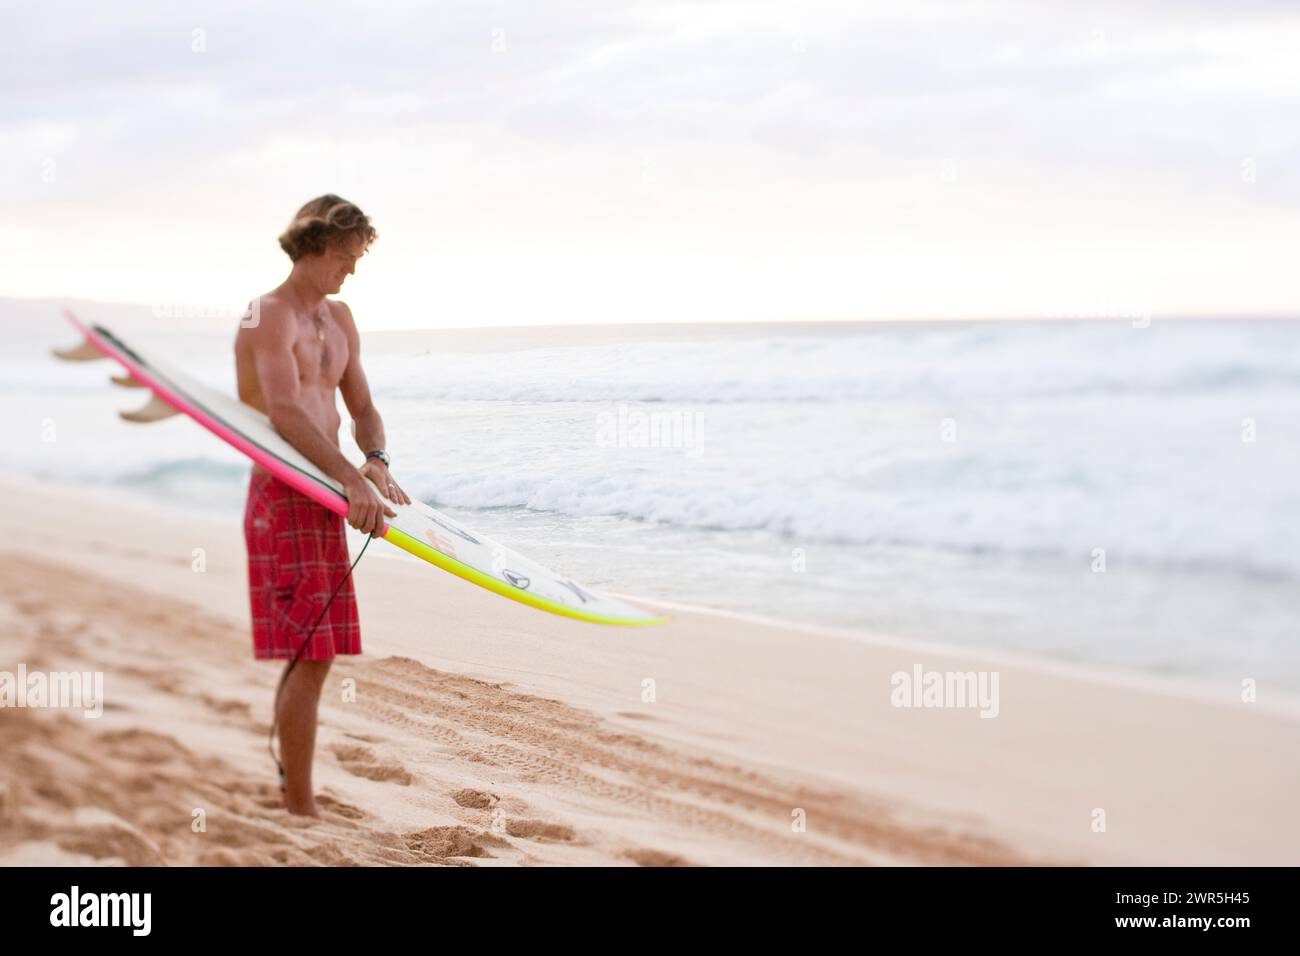 Ein Surfer am Strand von Pipeline, Hawaii Stockfoto